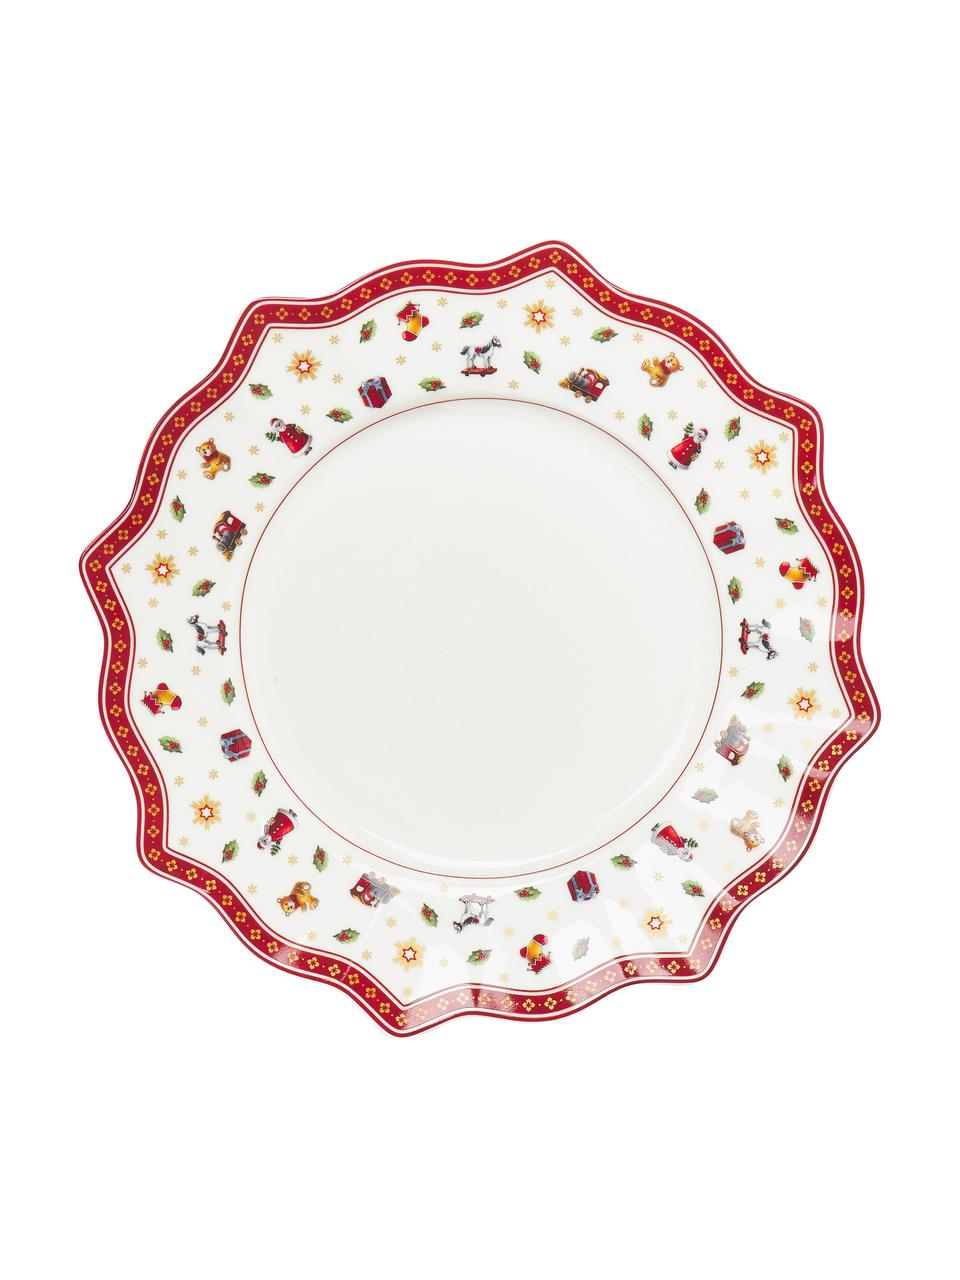 Súprava tanierov z porcelánu Toy's Delight, 4 osoby (12 dielov), Premium porcelán, Biela, červená, vzorovaná, 4 osoby (12 dielov)